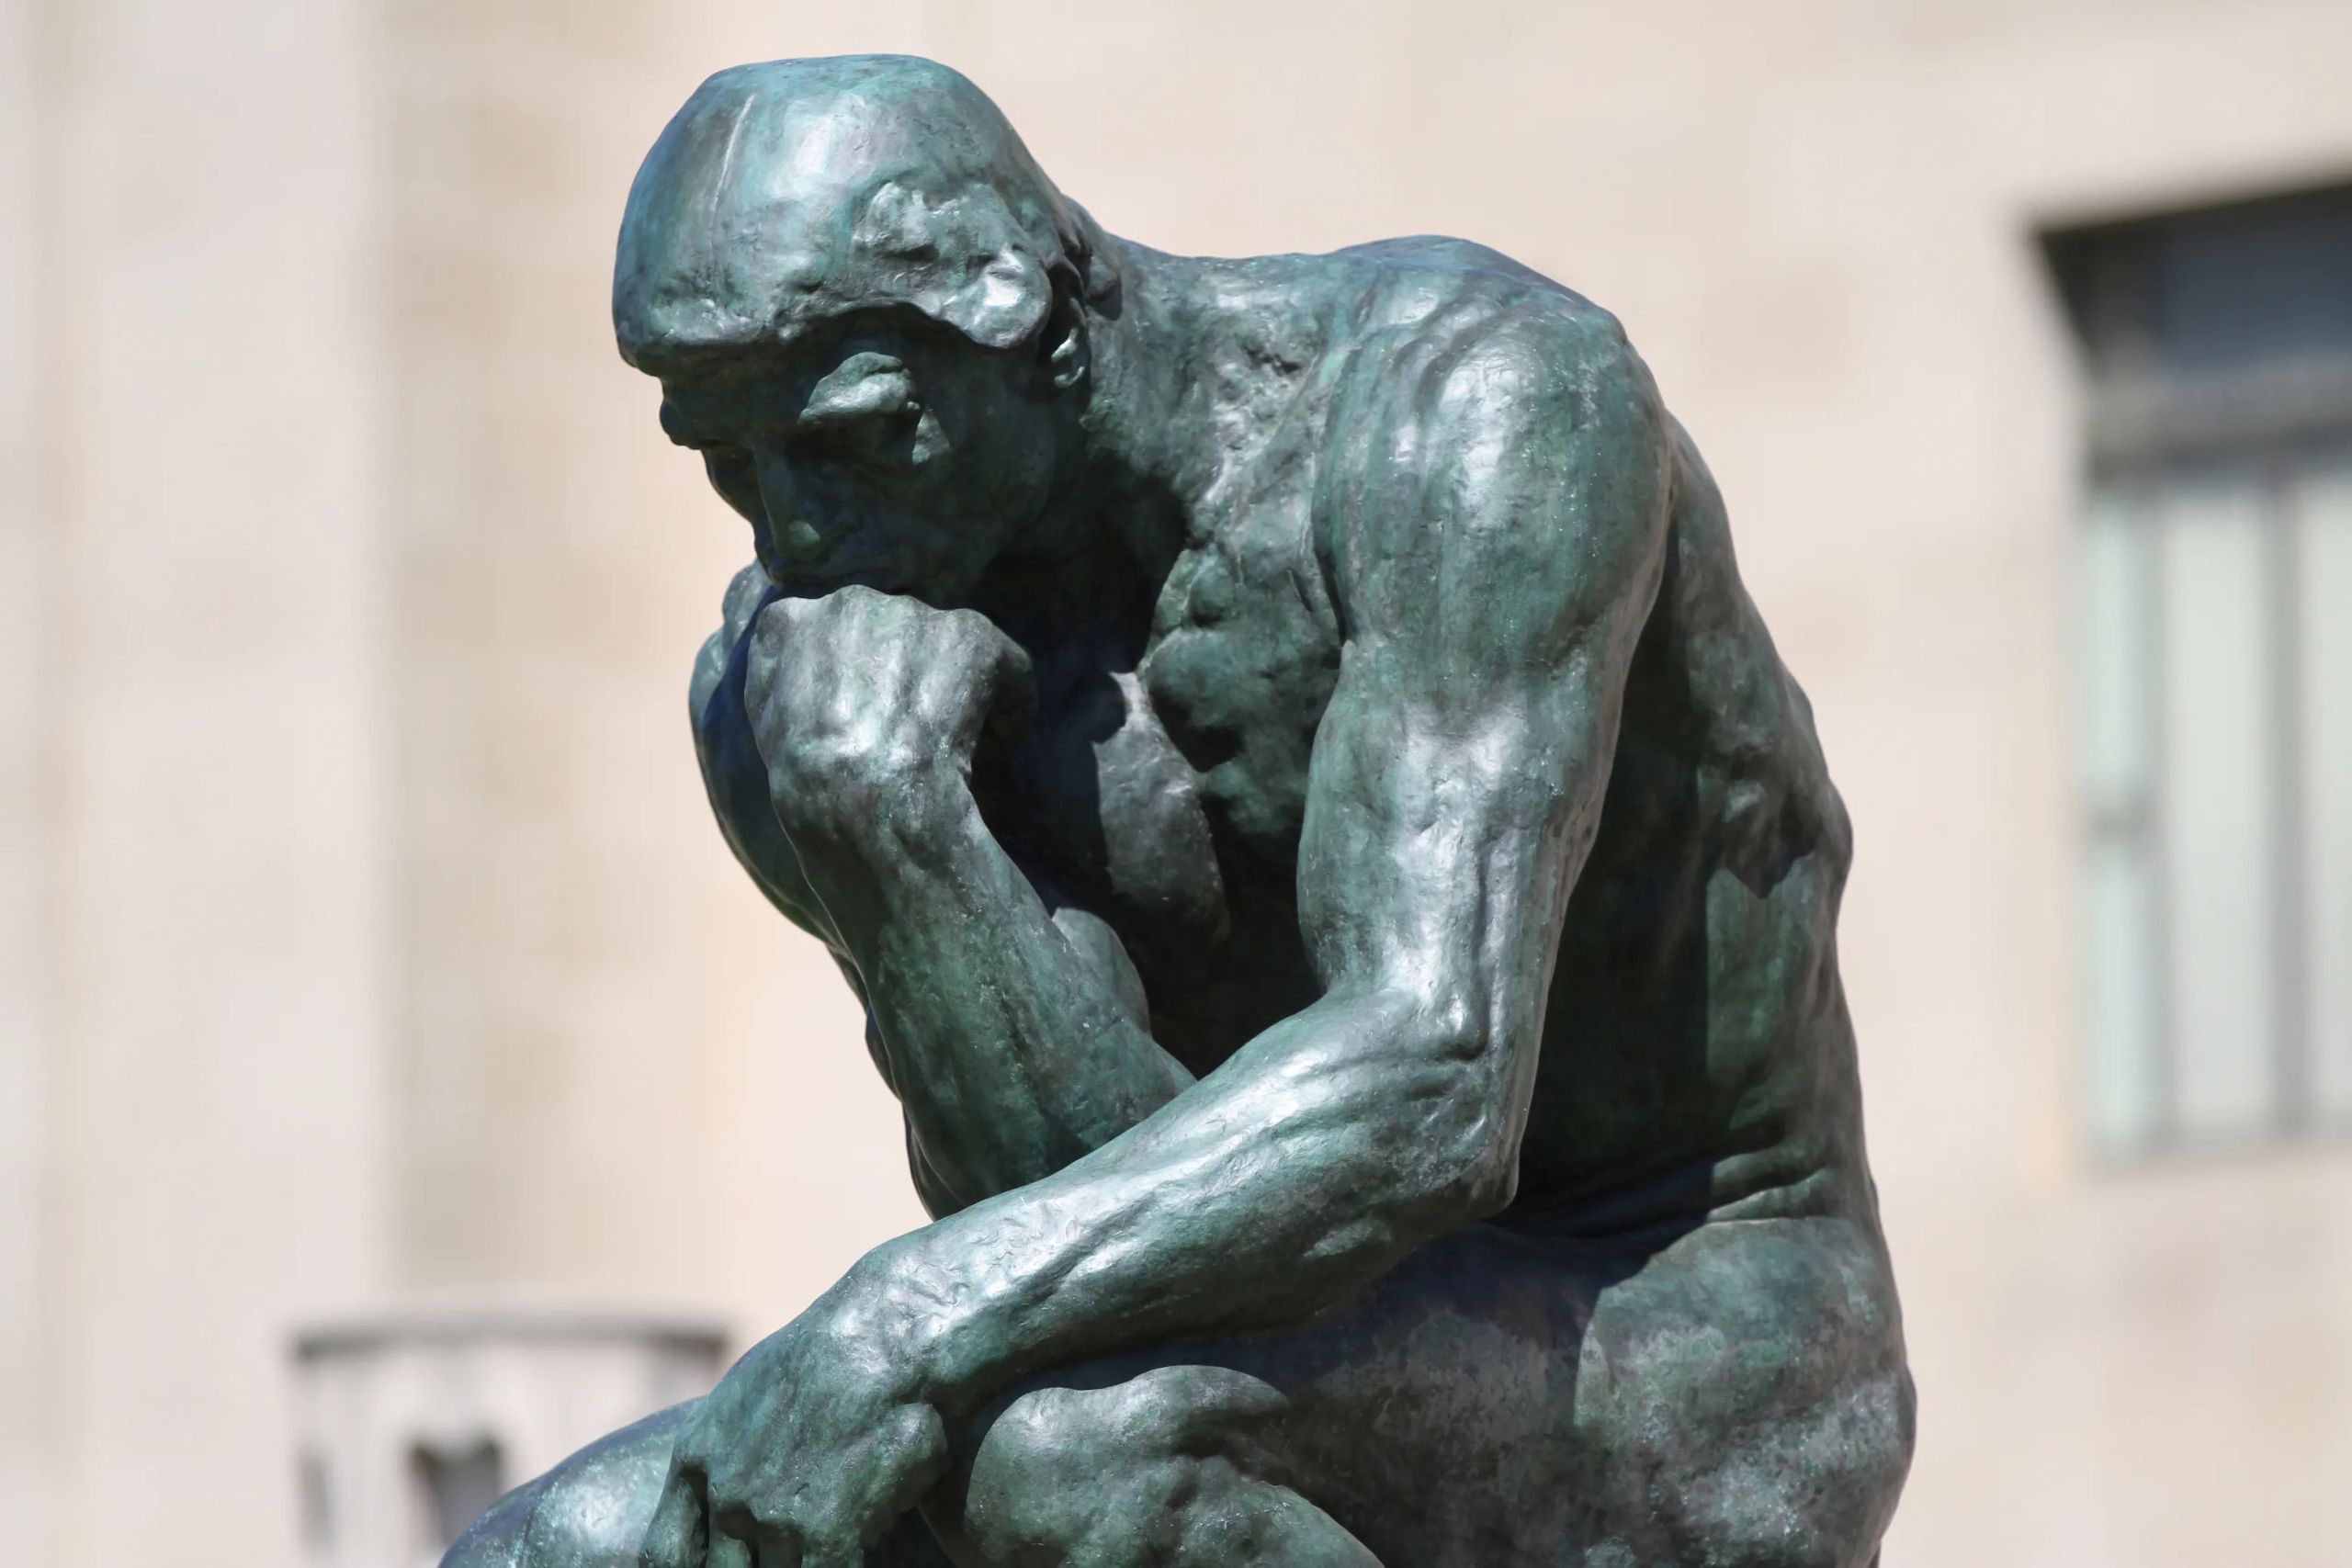 Estatua del pensador de Rodin